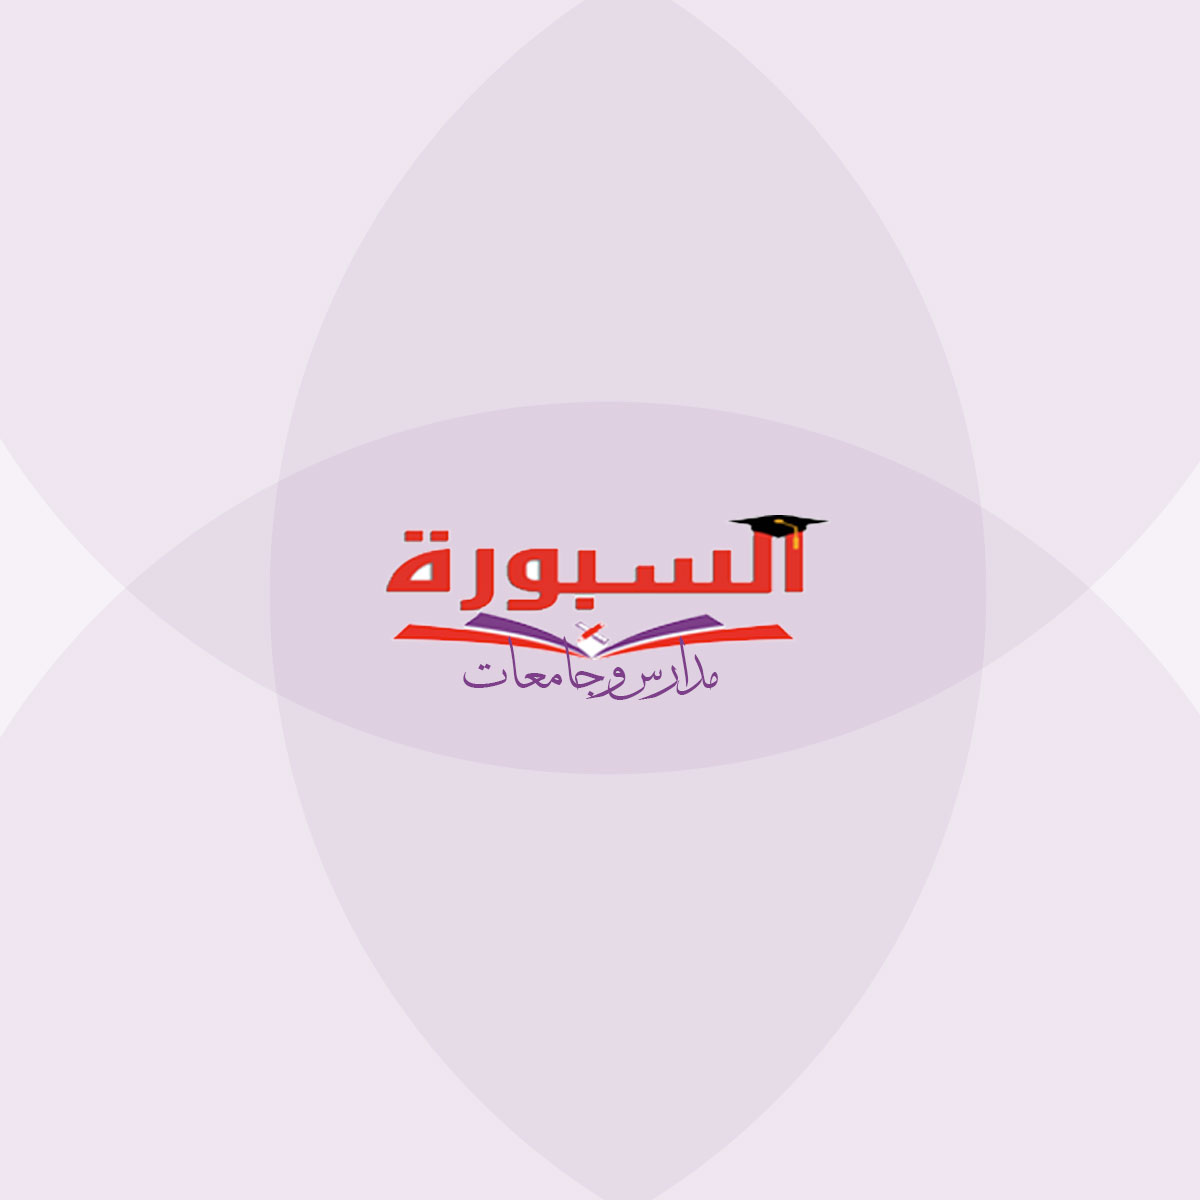 ٥١٥ حالة حصاد قافلة جامعة الزقازيق اليوم بمدينة أبو كبير بالشرقية